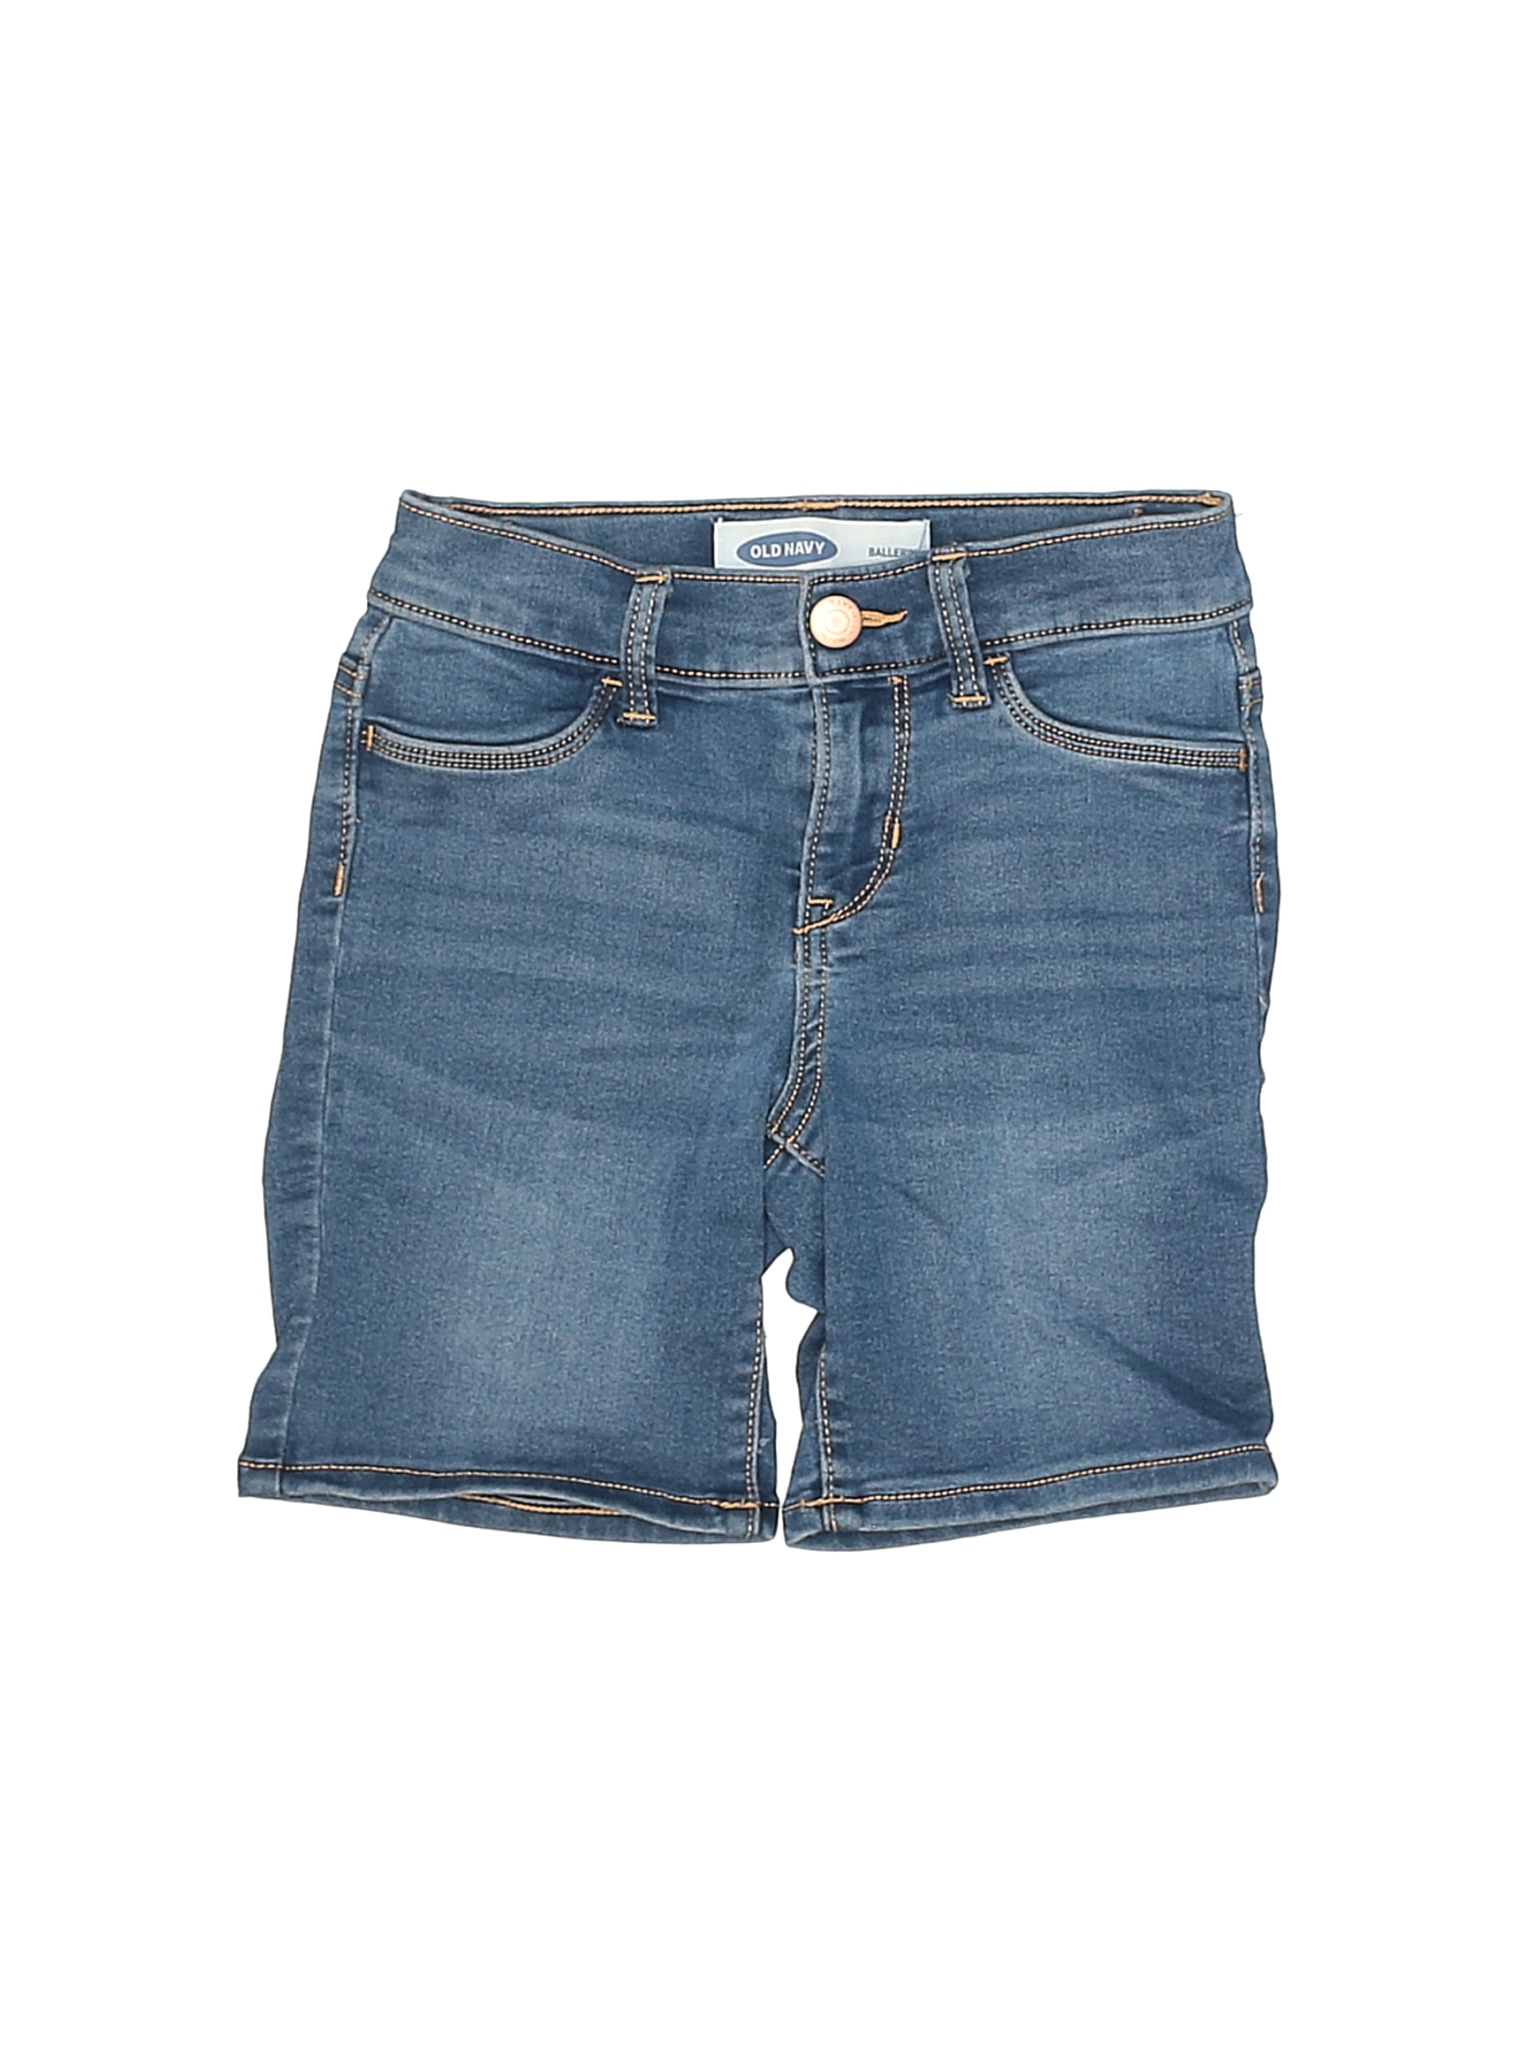 Old Navy Girls Blue Denim Shorts 8 | eBay